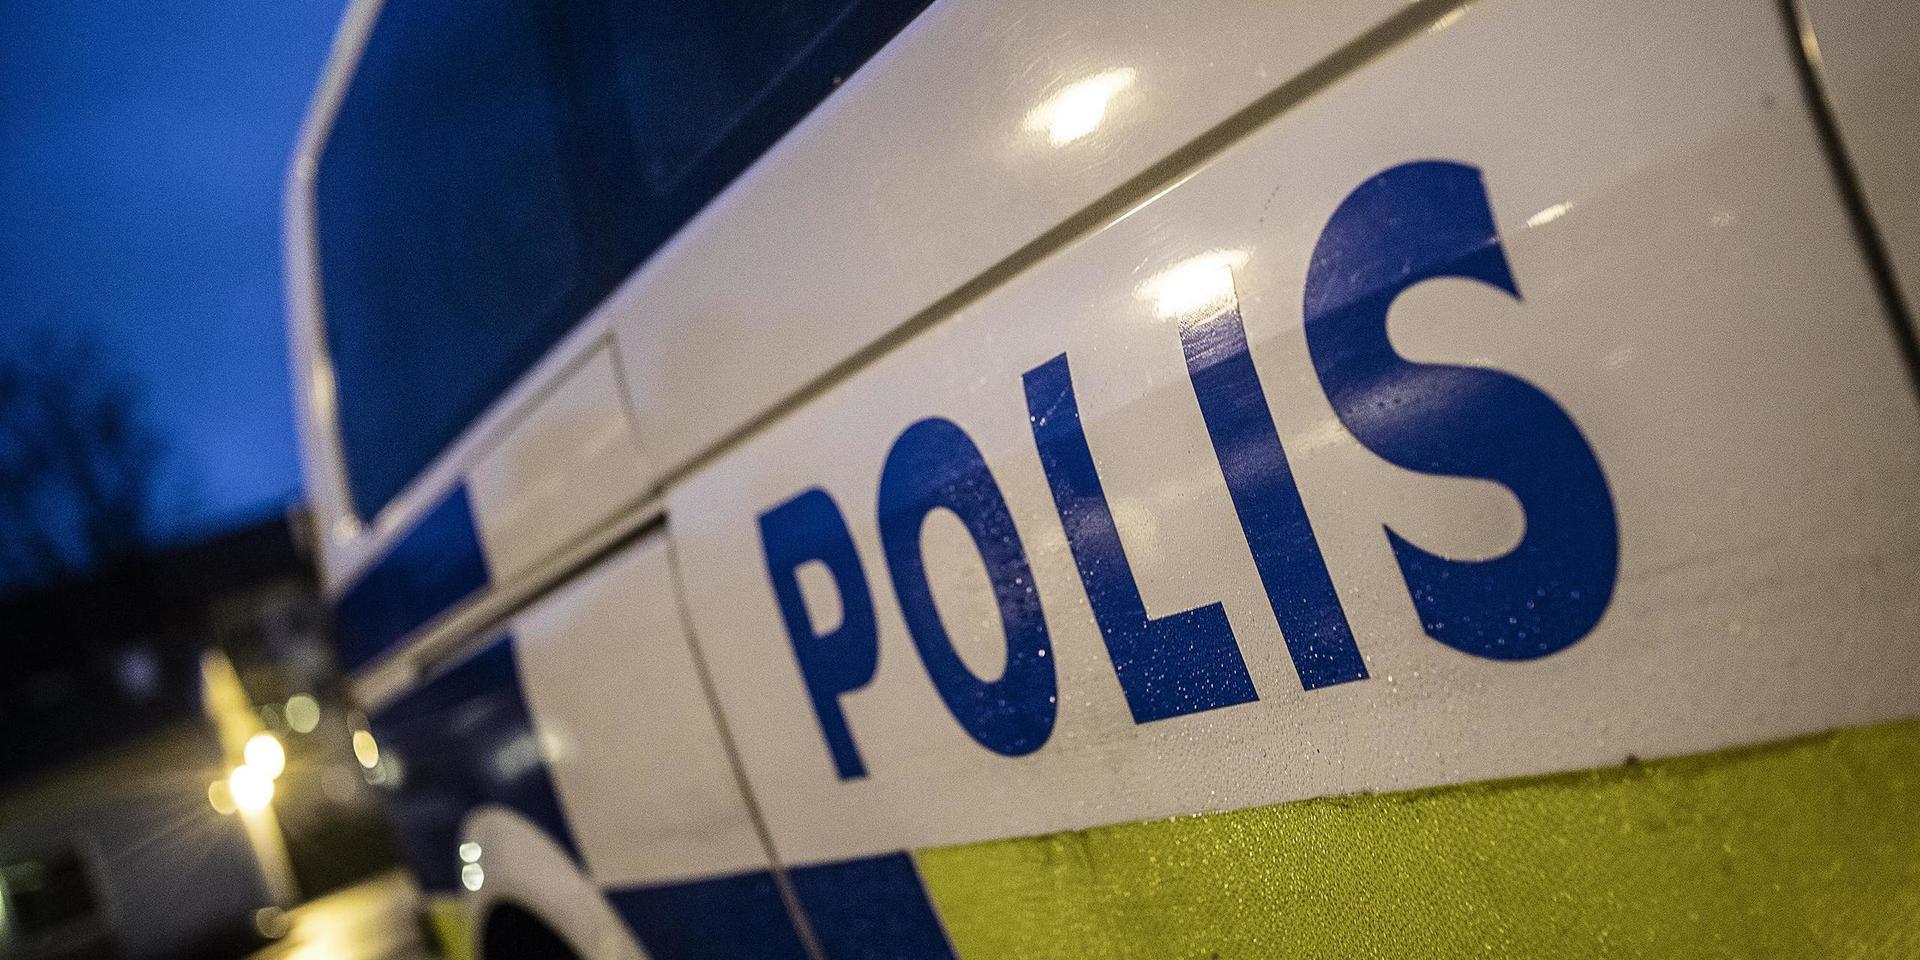 Tre ung män misstänks för olaga hot och skadegörelse efter att ha kommit oinbjudna på en fest i Älvsåker under natten till söndagen.